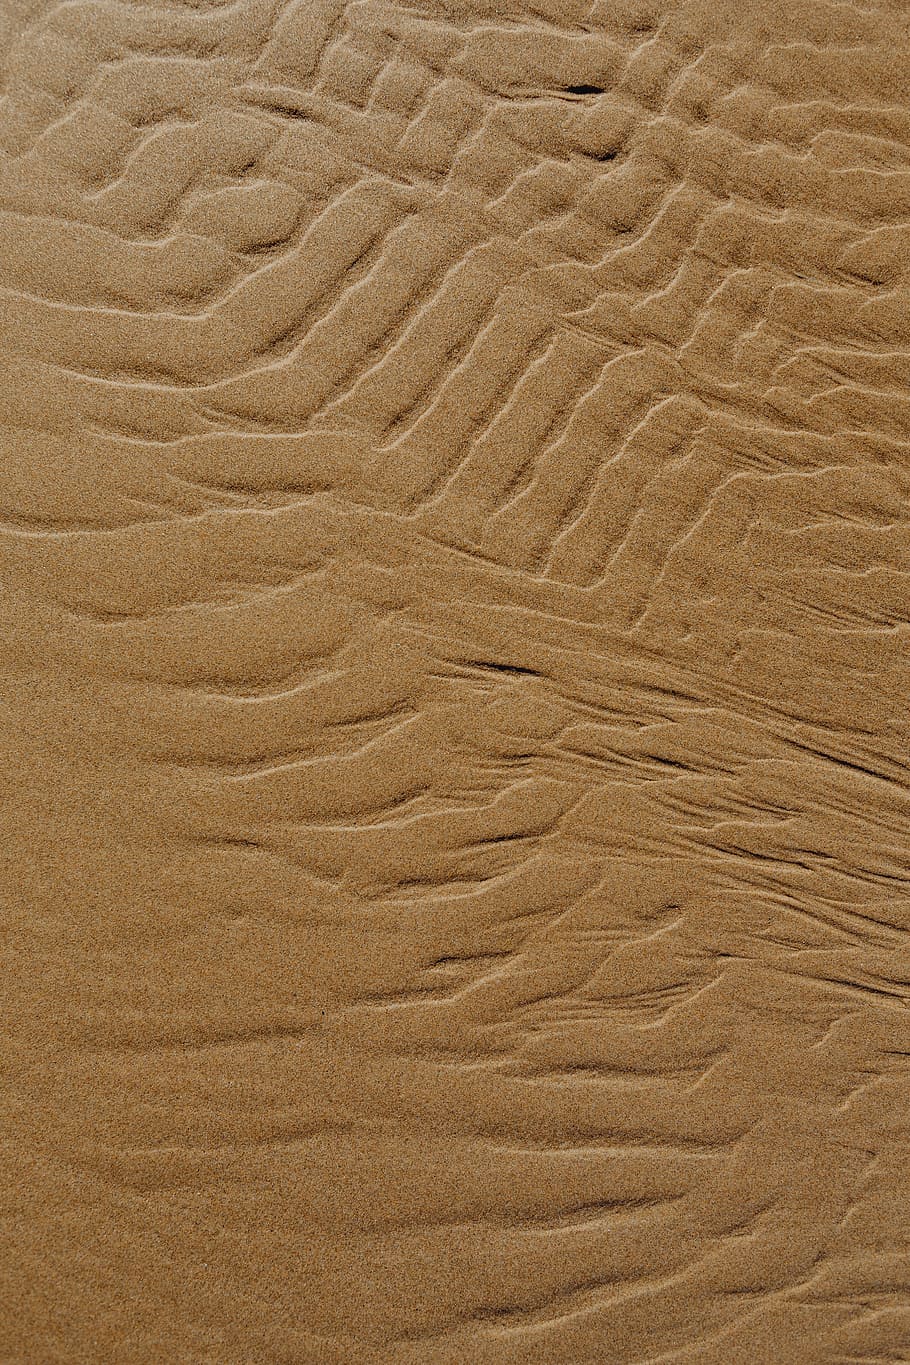 abstrak, garis, dirancang, air, tekstur pasir, pantai, pasir, latar belakang, tekstur, pola